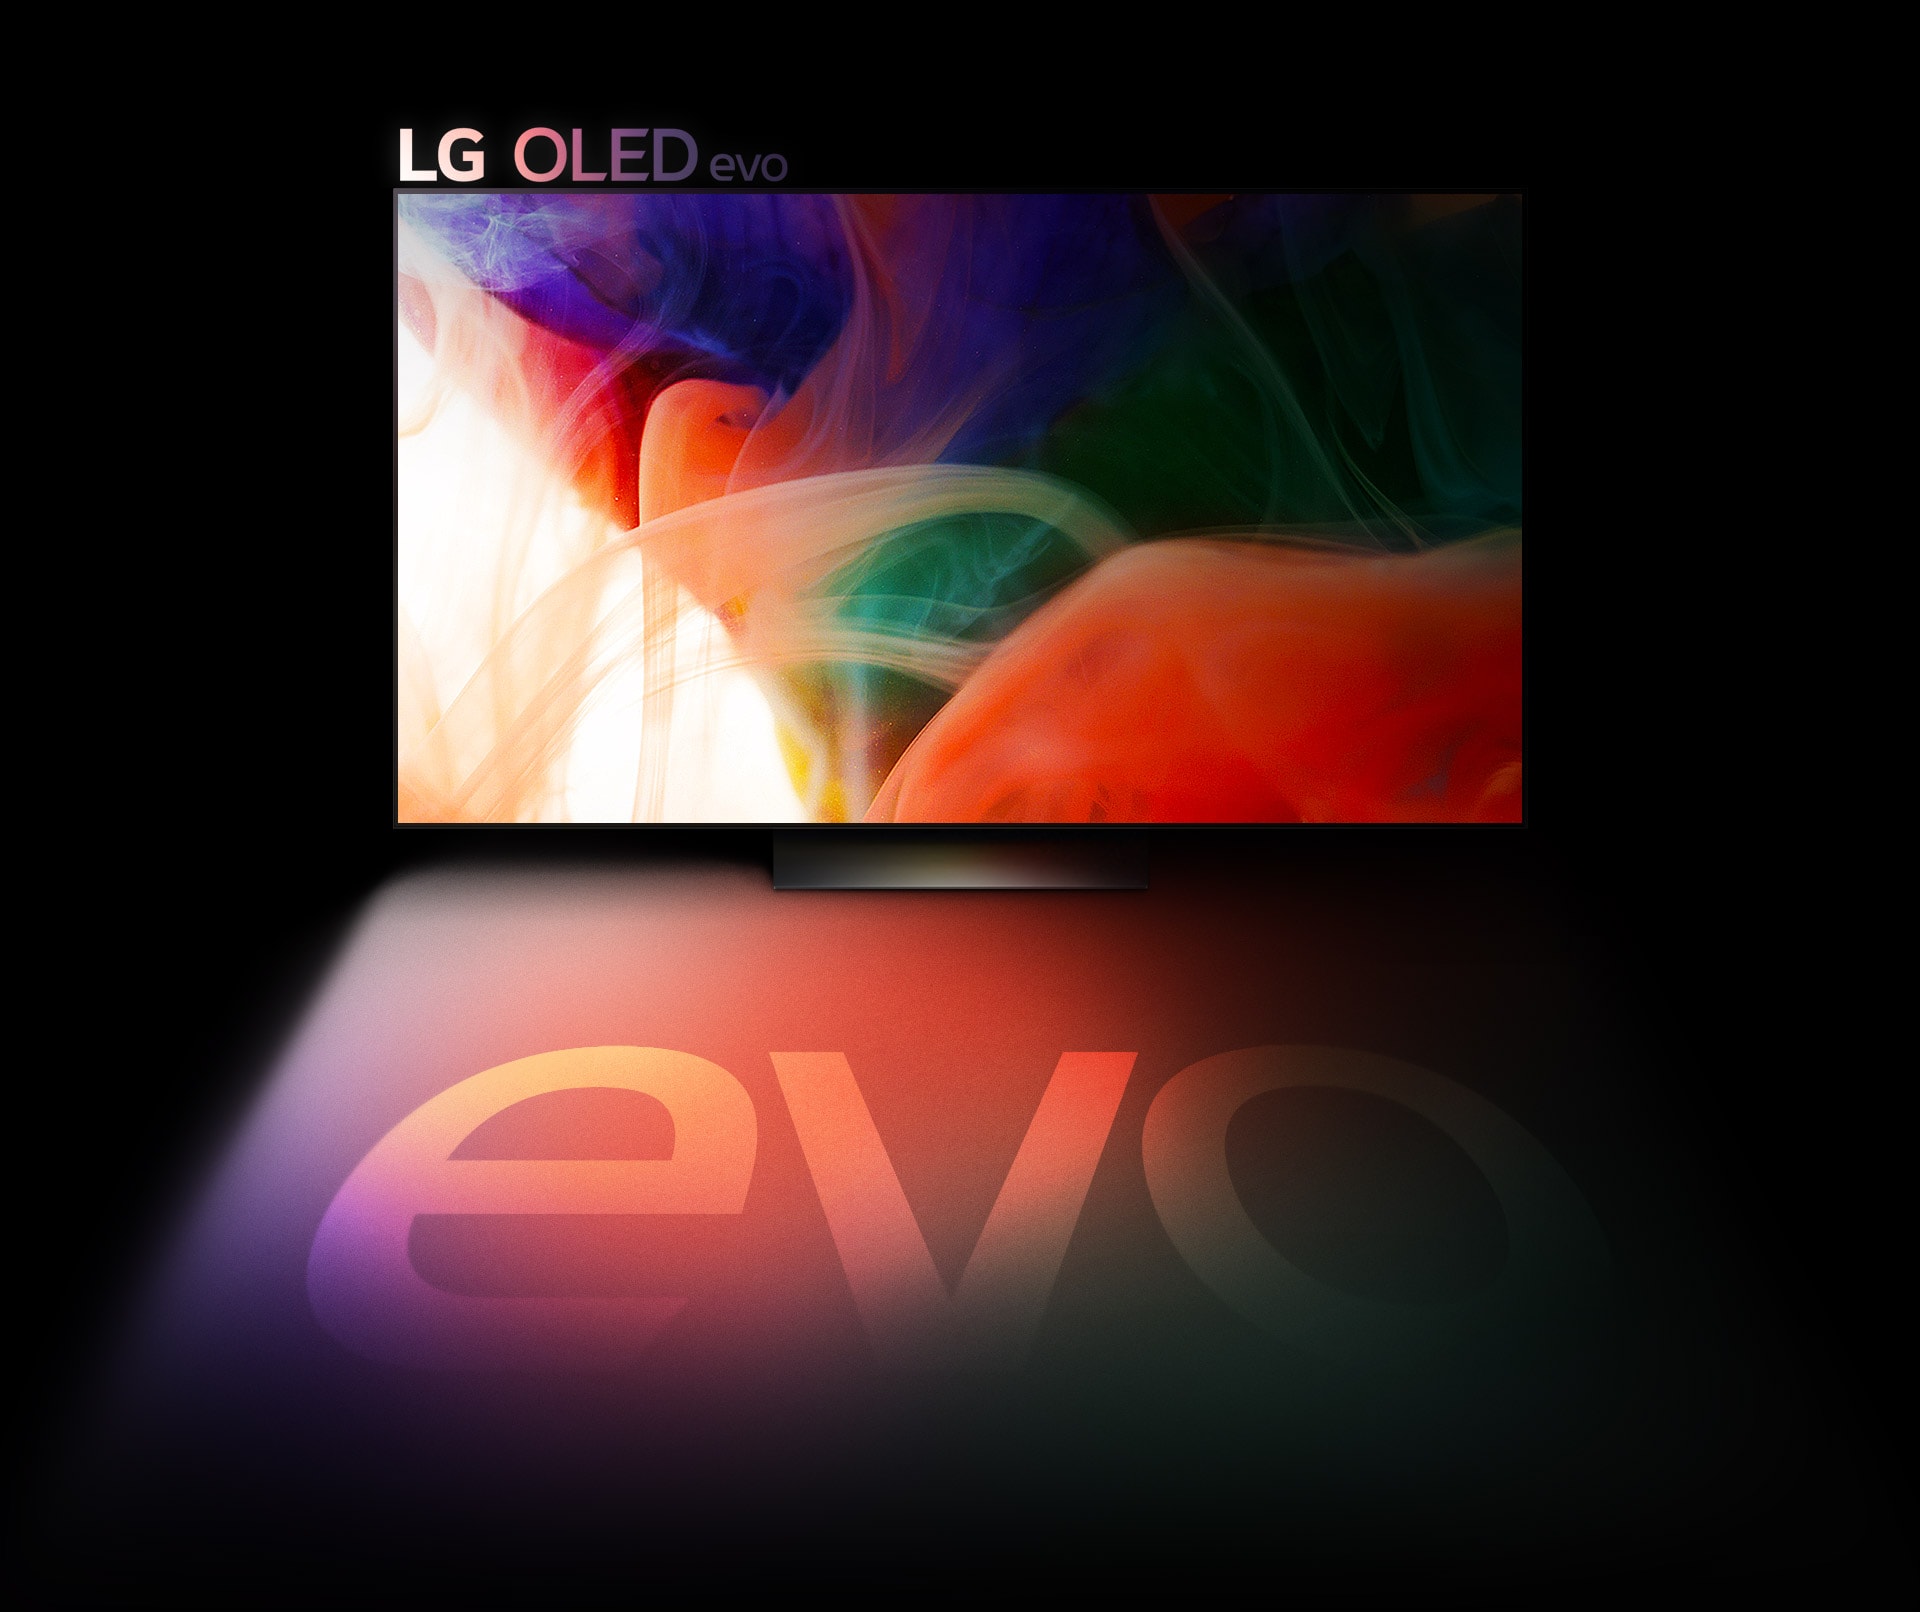 Een OLED evo TV geeft een kleurrijk abstract beeld weer